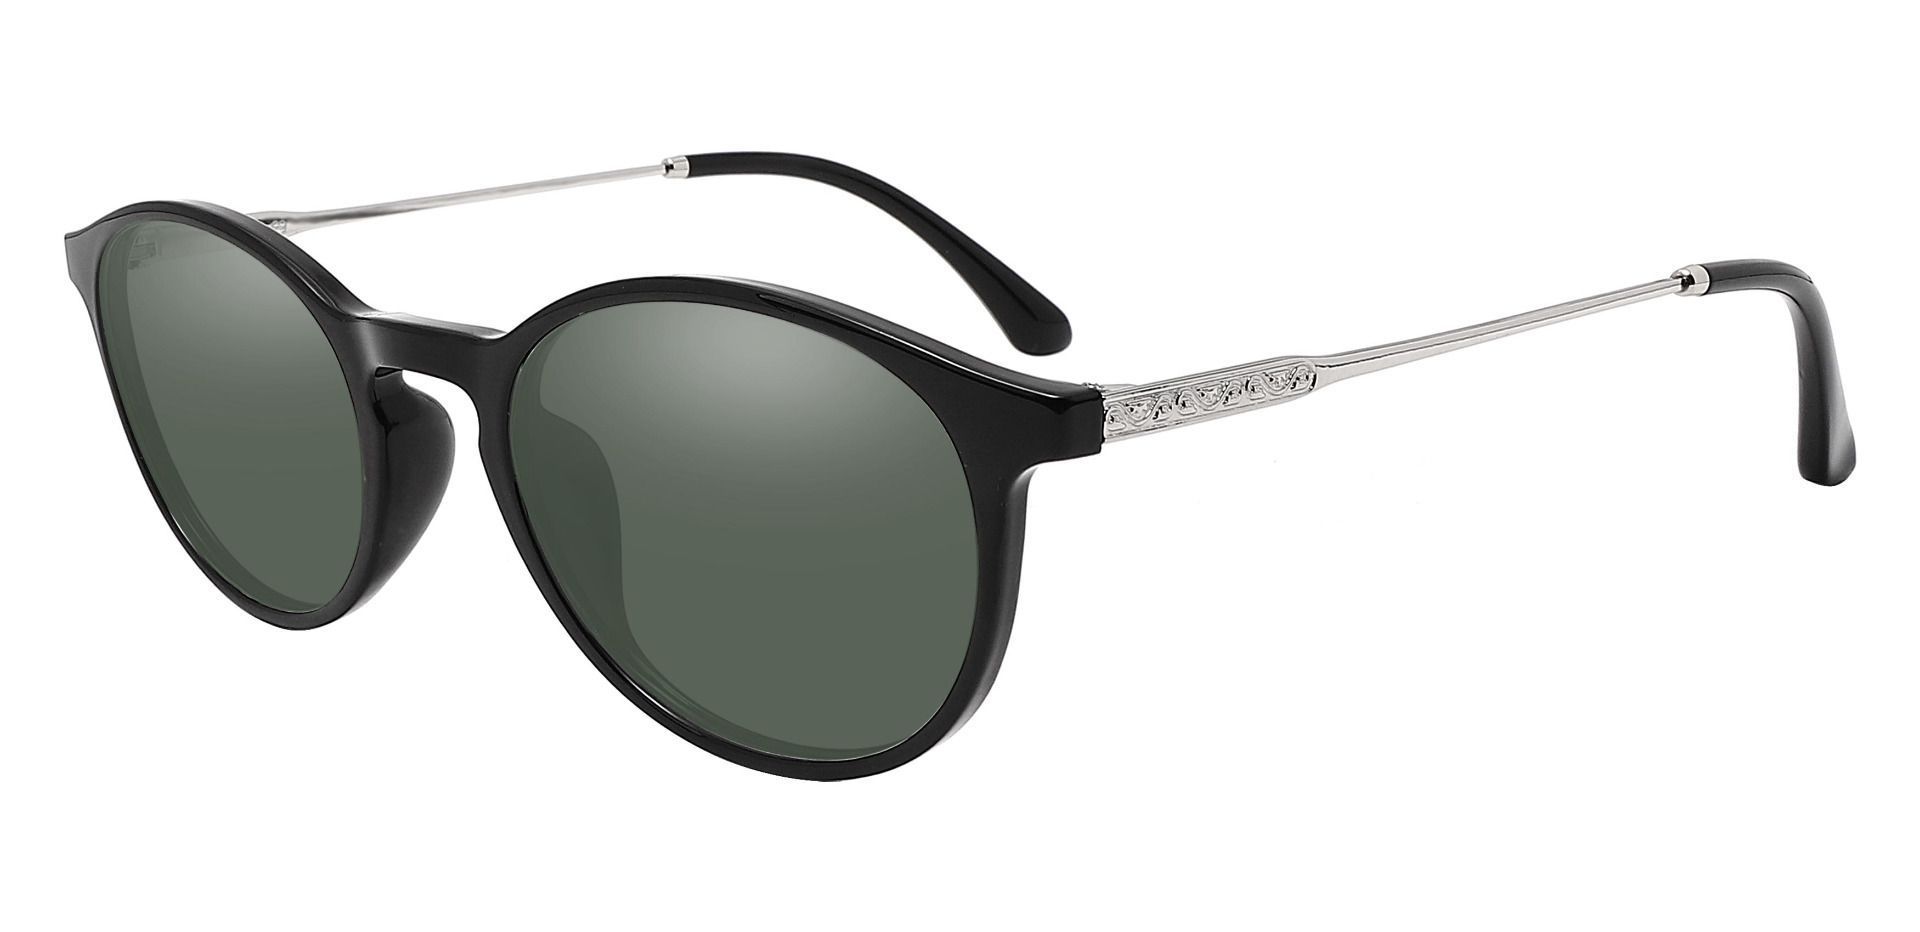 Felton Oval Reading Sunglasses - Black Frame With Green Lenses